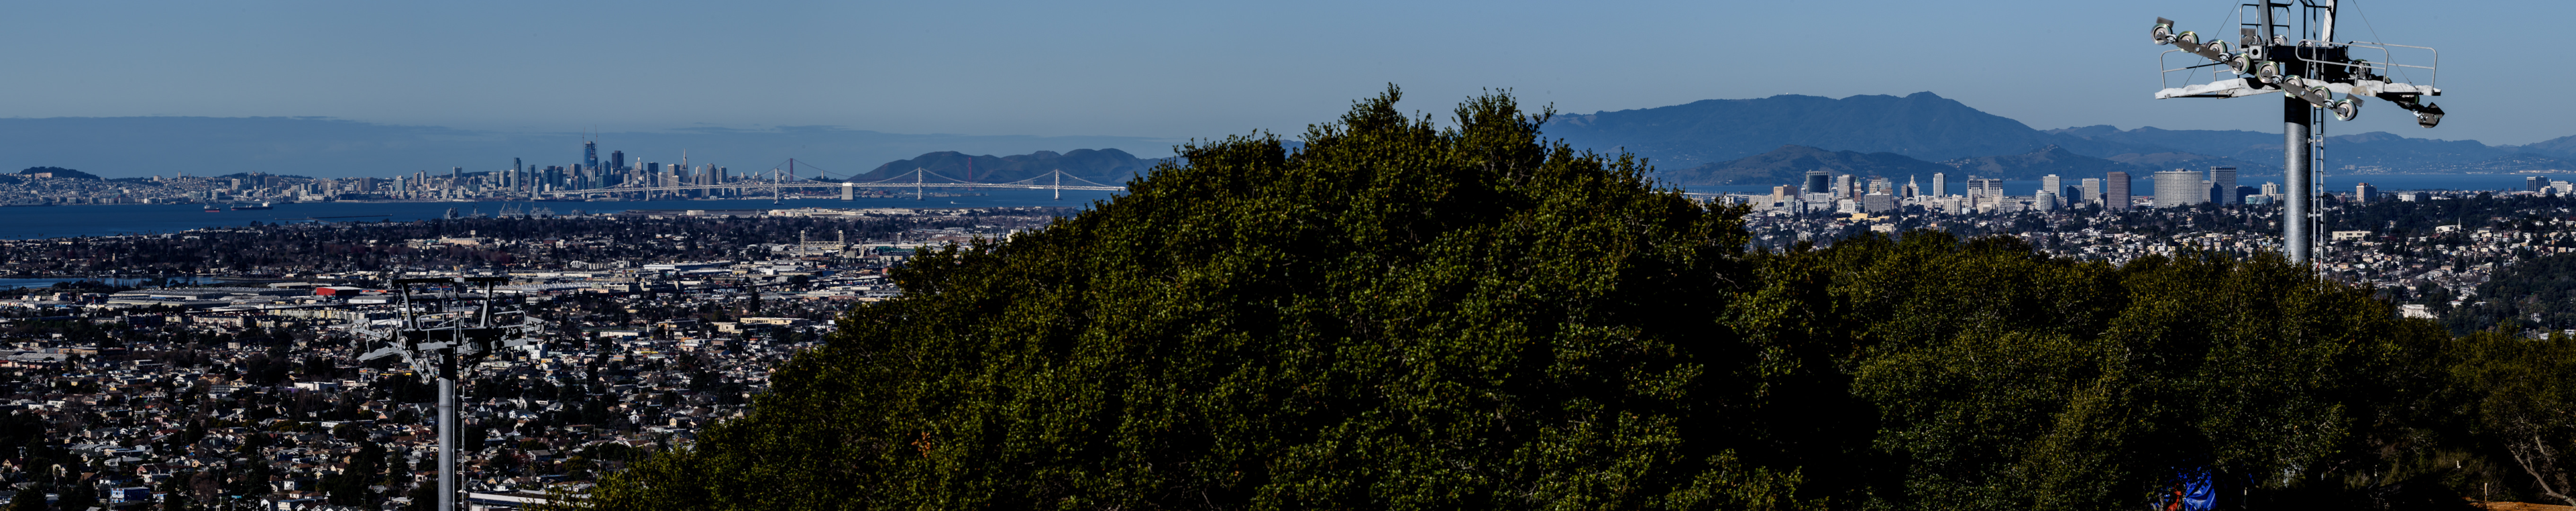 Bison Overlook's uitzicht op de stad Oakland, de Bay Bridge en San Francisco op de achtergrond